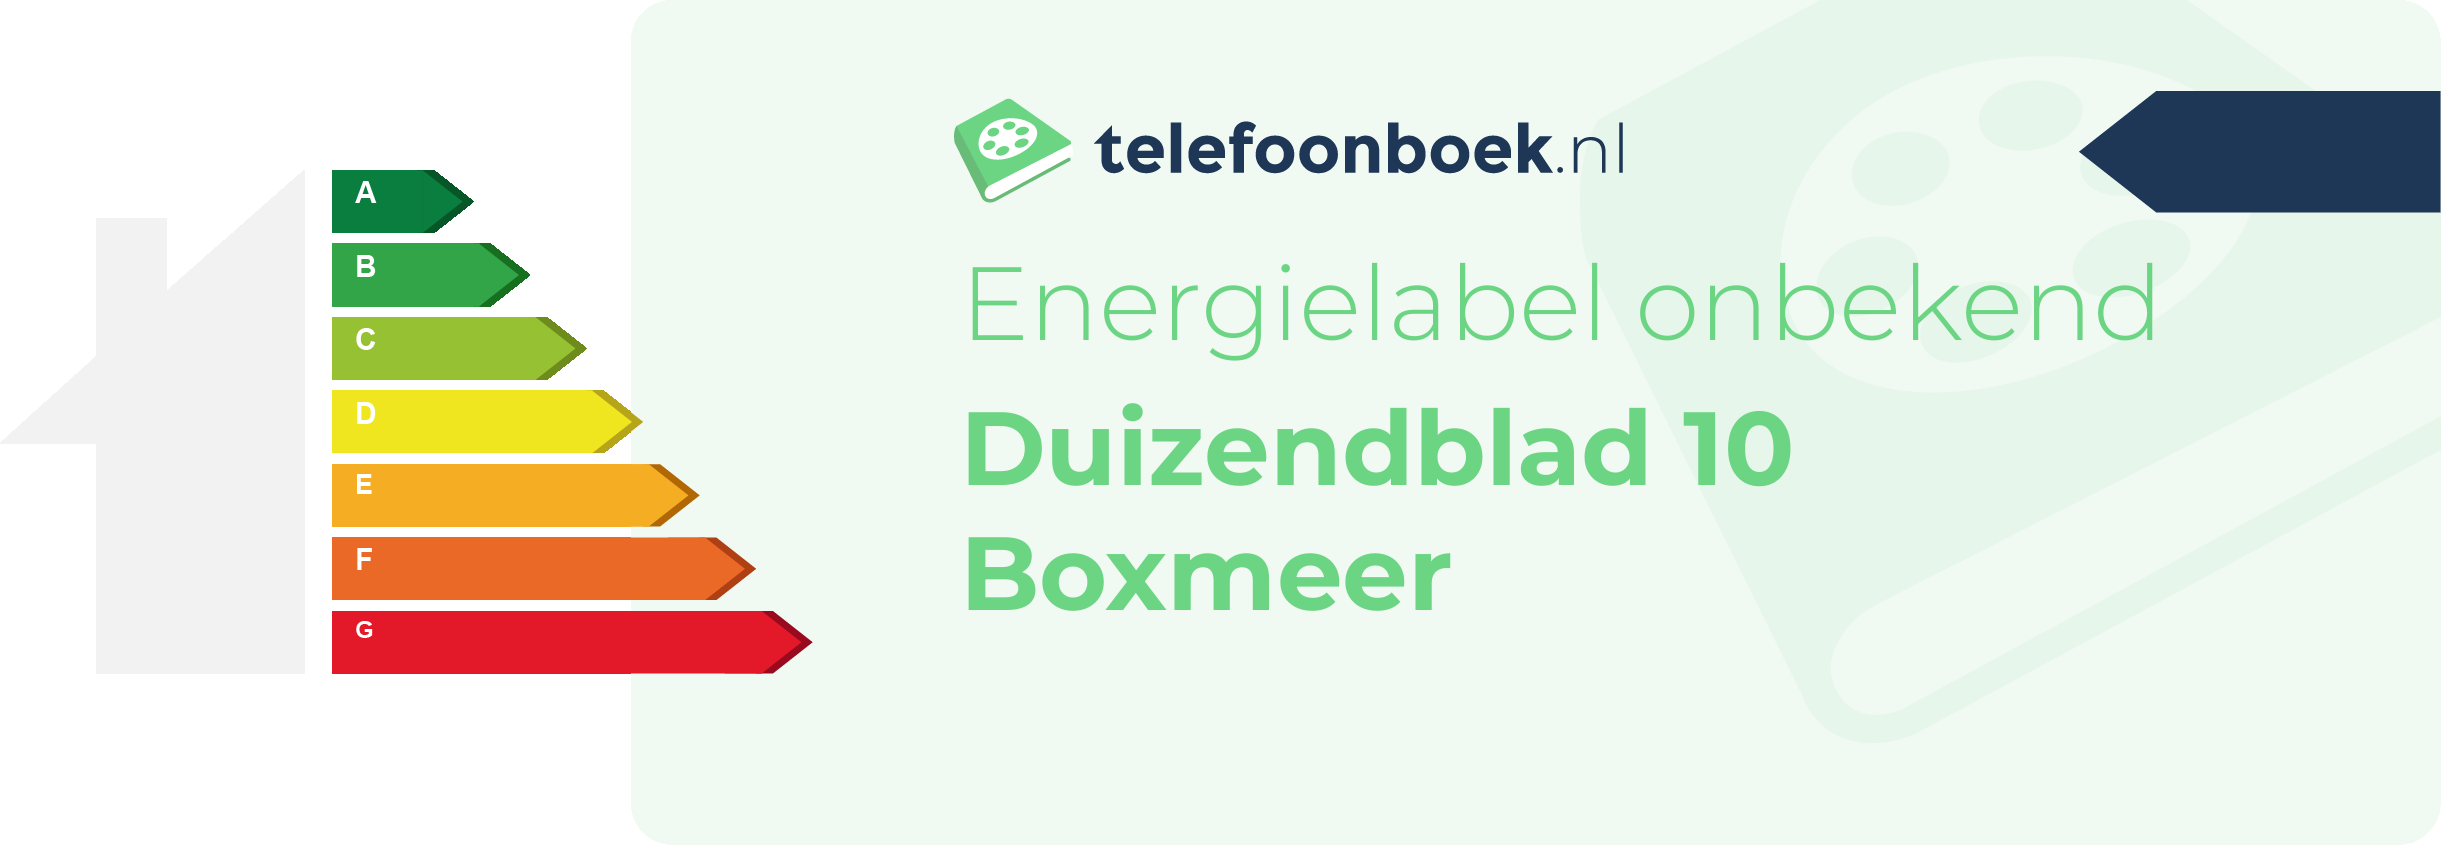 Energielabel Duizendblad 10 Boxmeer